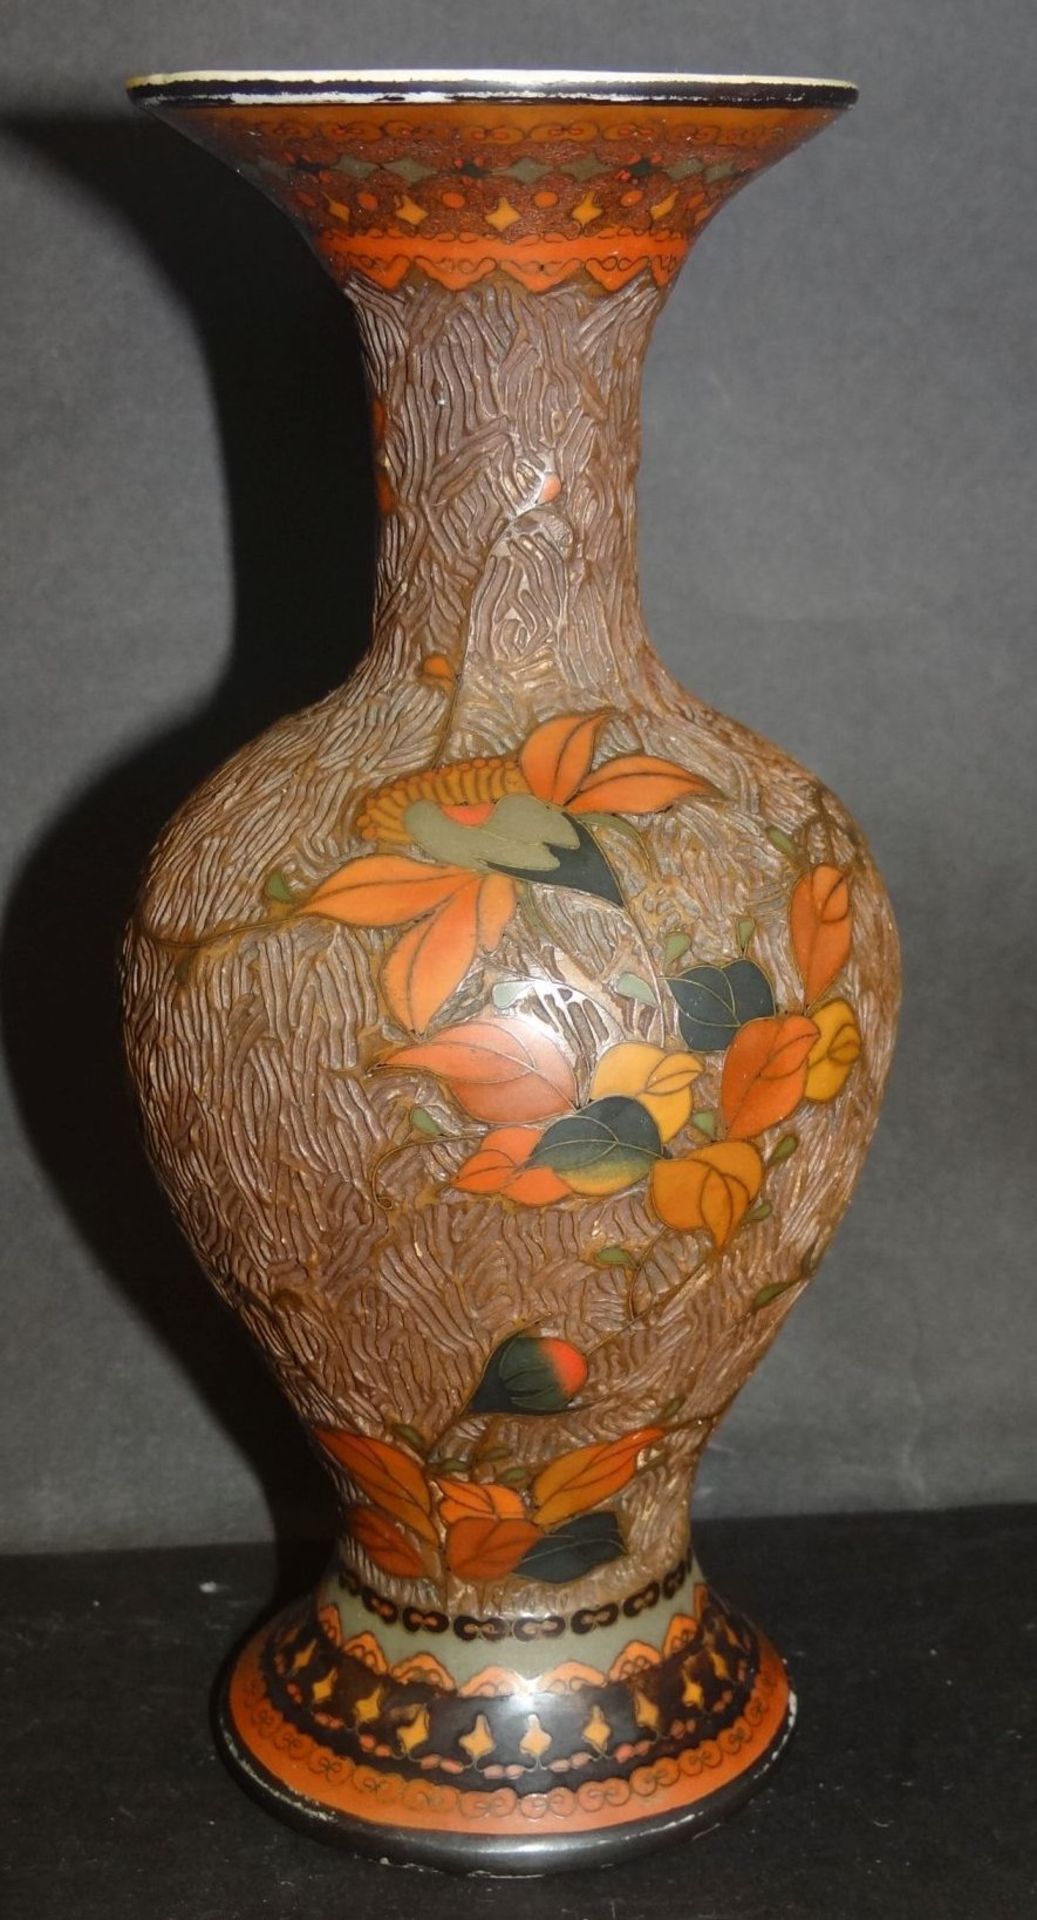 Vase, wohl China?, Porzellan mit Rotlack? geschnitten und bemaltes Dekor, Vögel und Blätter, älter, - Bild 2 aus 6